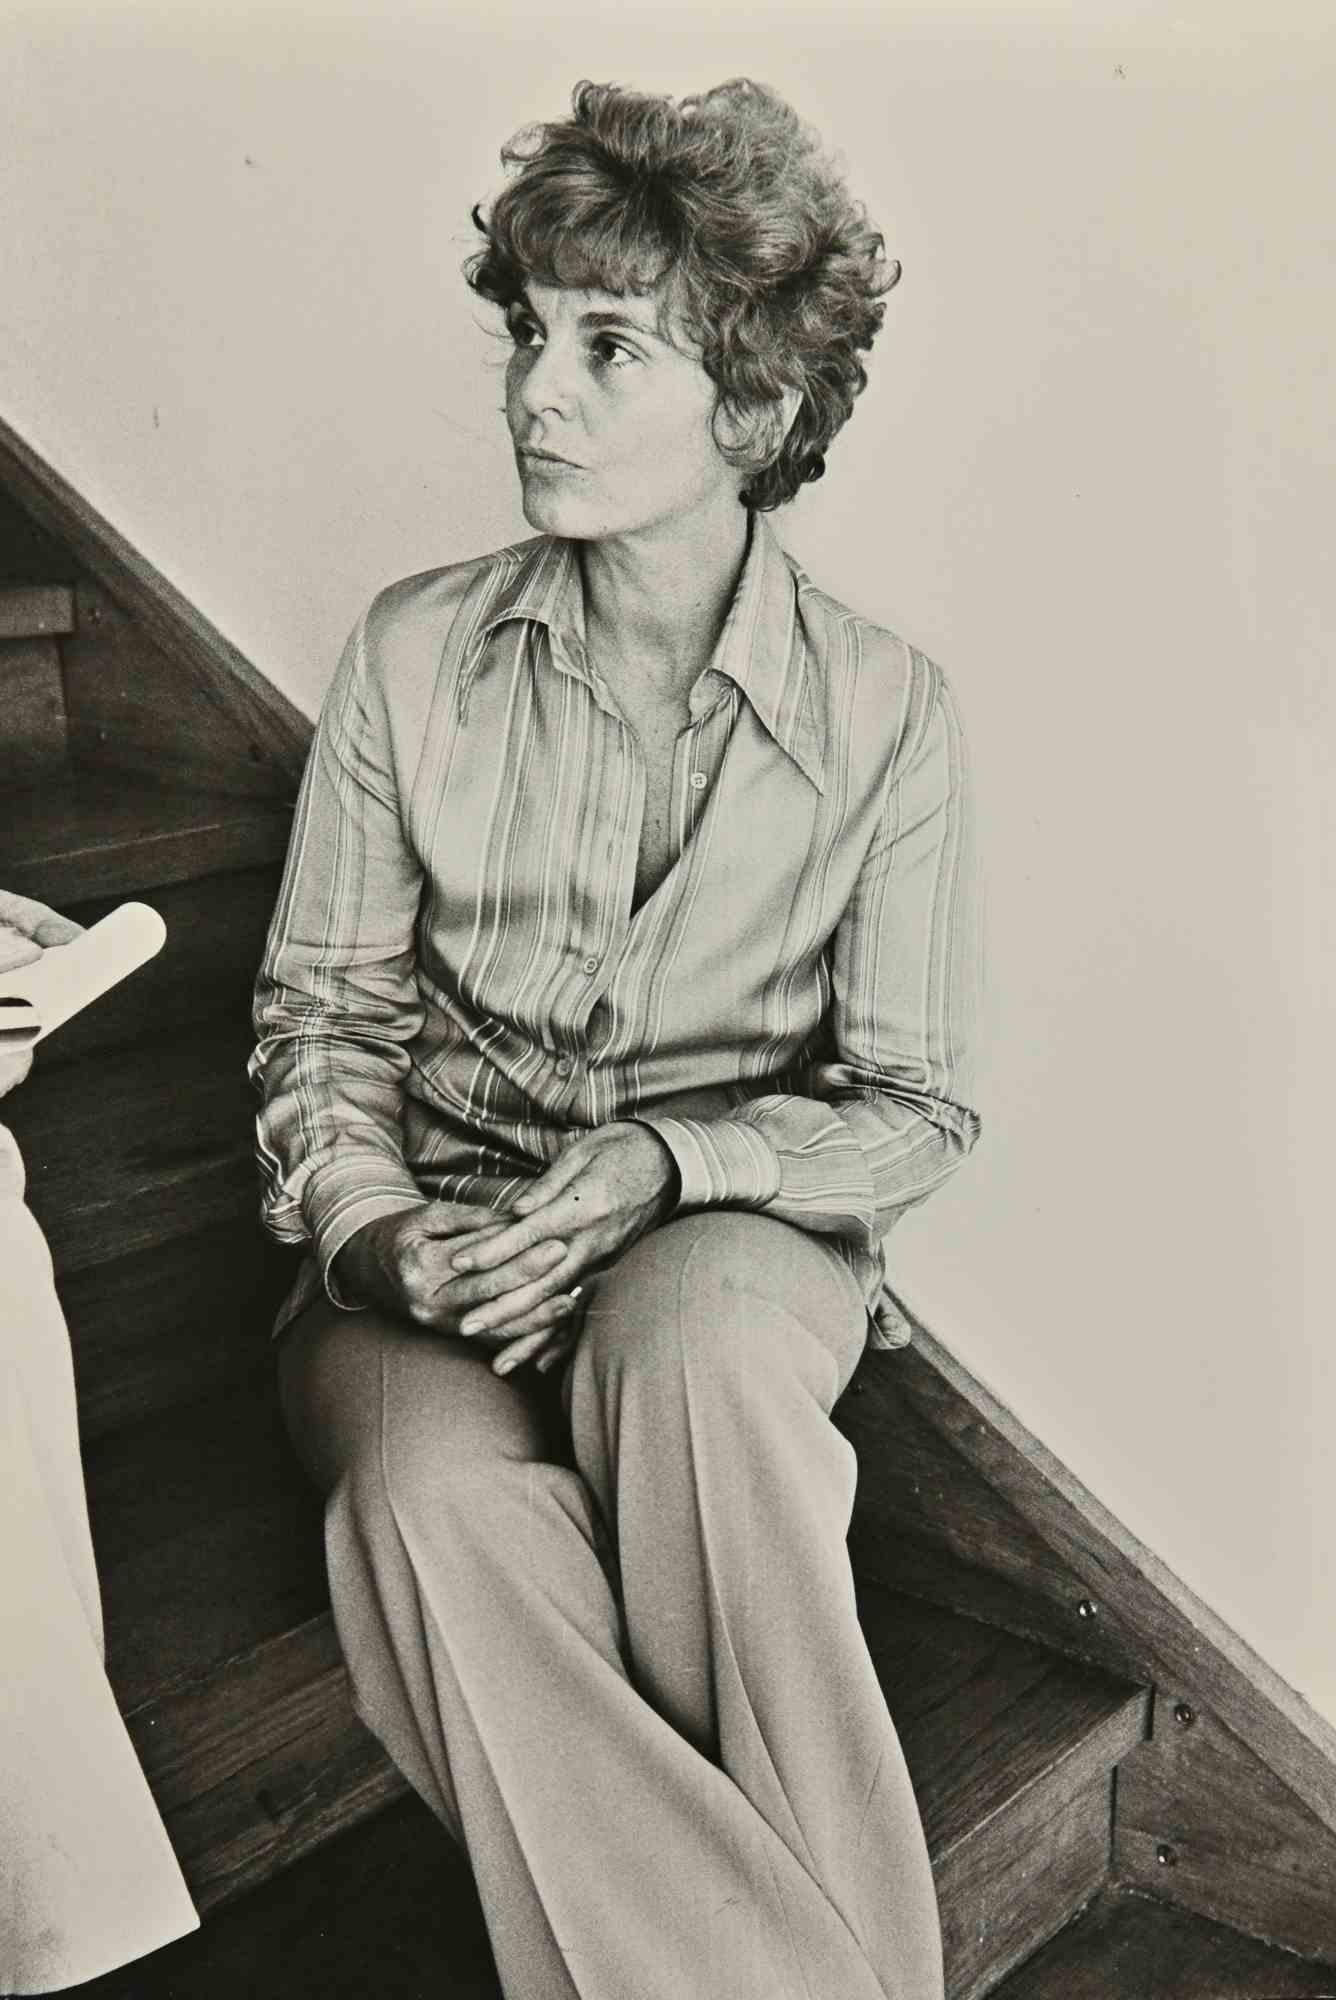 Unknown Portrait Photograph - Gail Getty - Vintage Photograph - 1960s